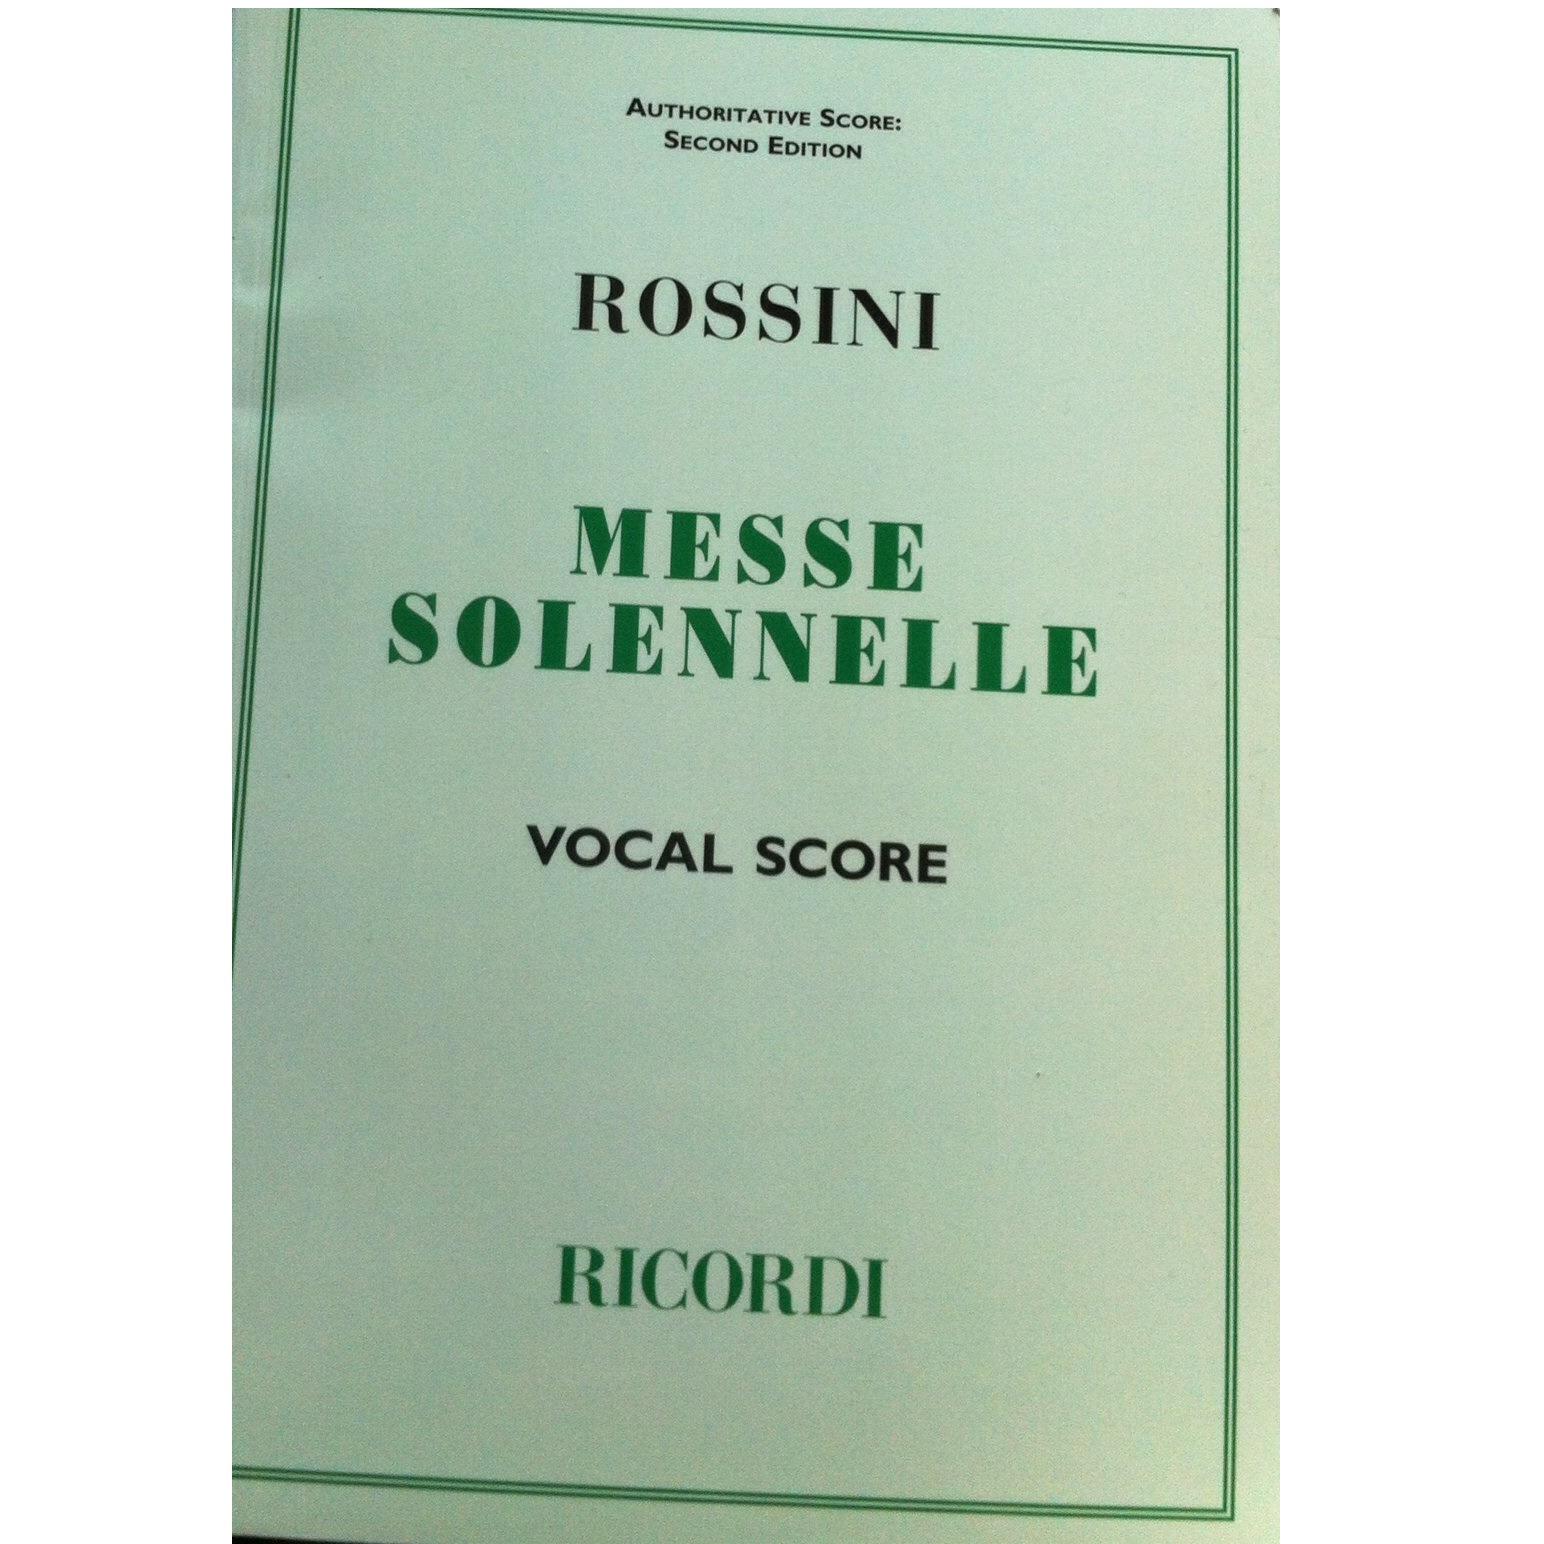 Rossini Messe Solennelle Vocal Score - Ricordi